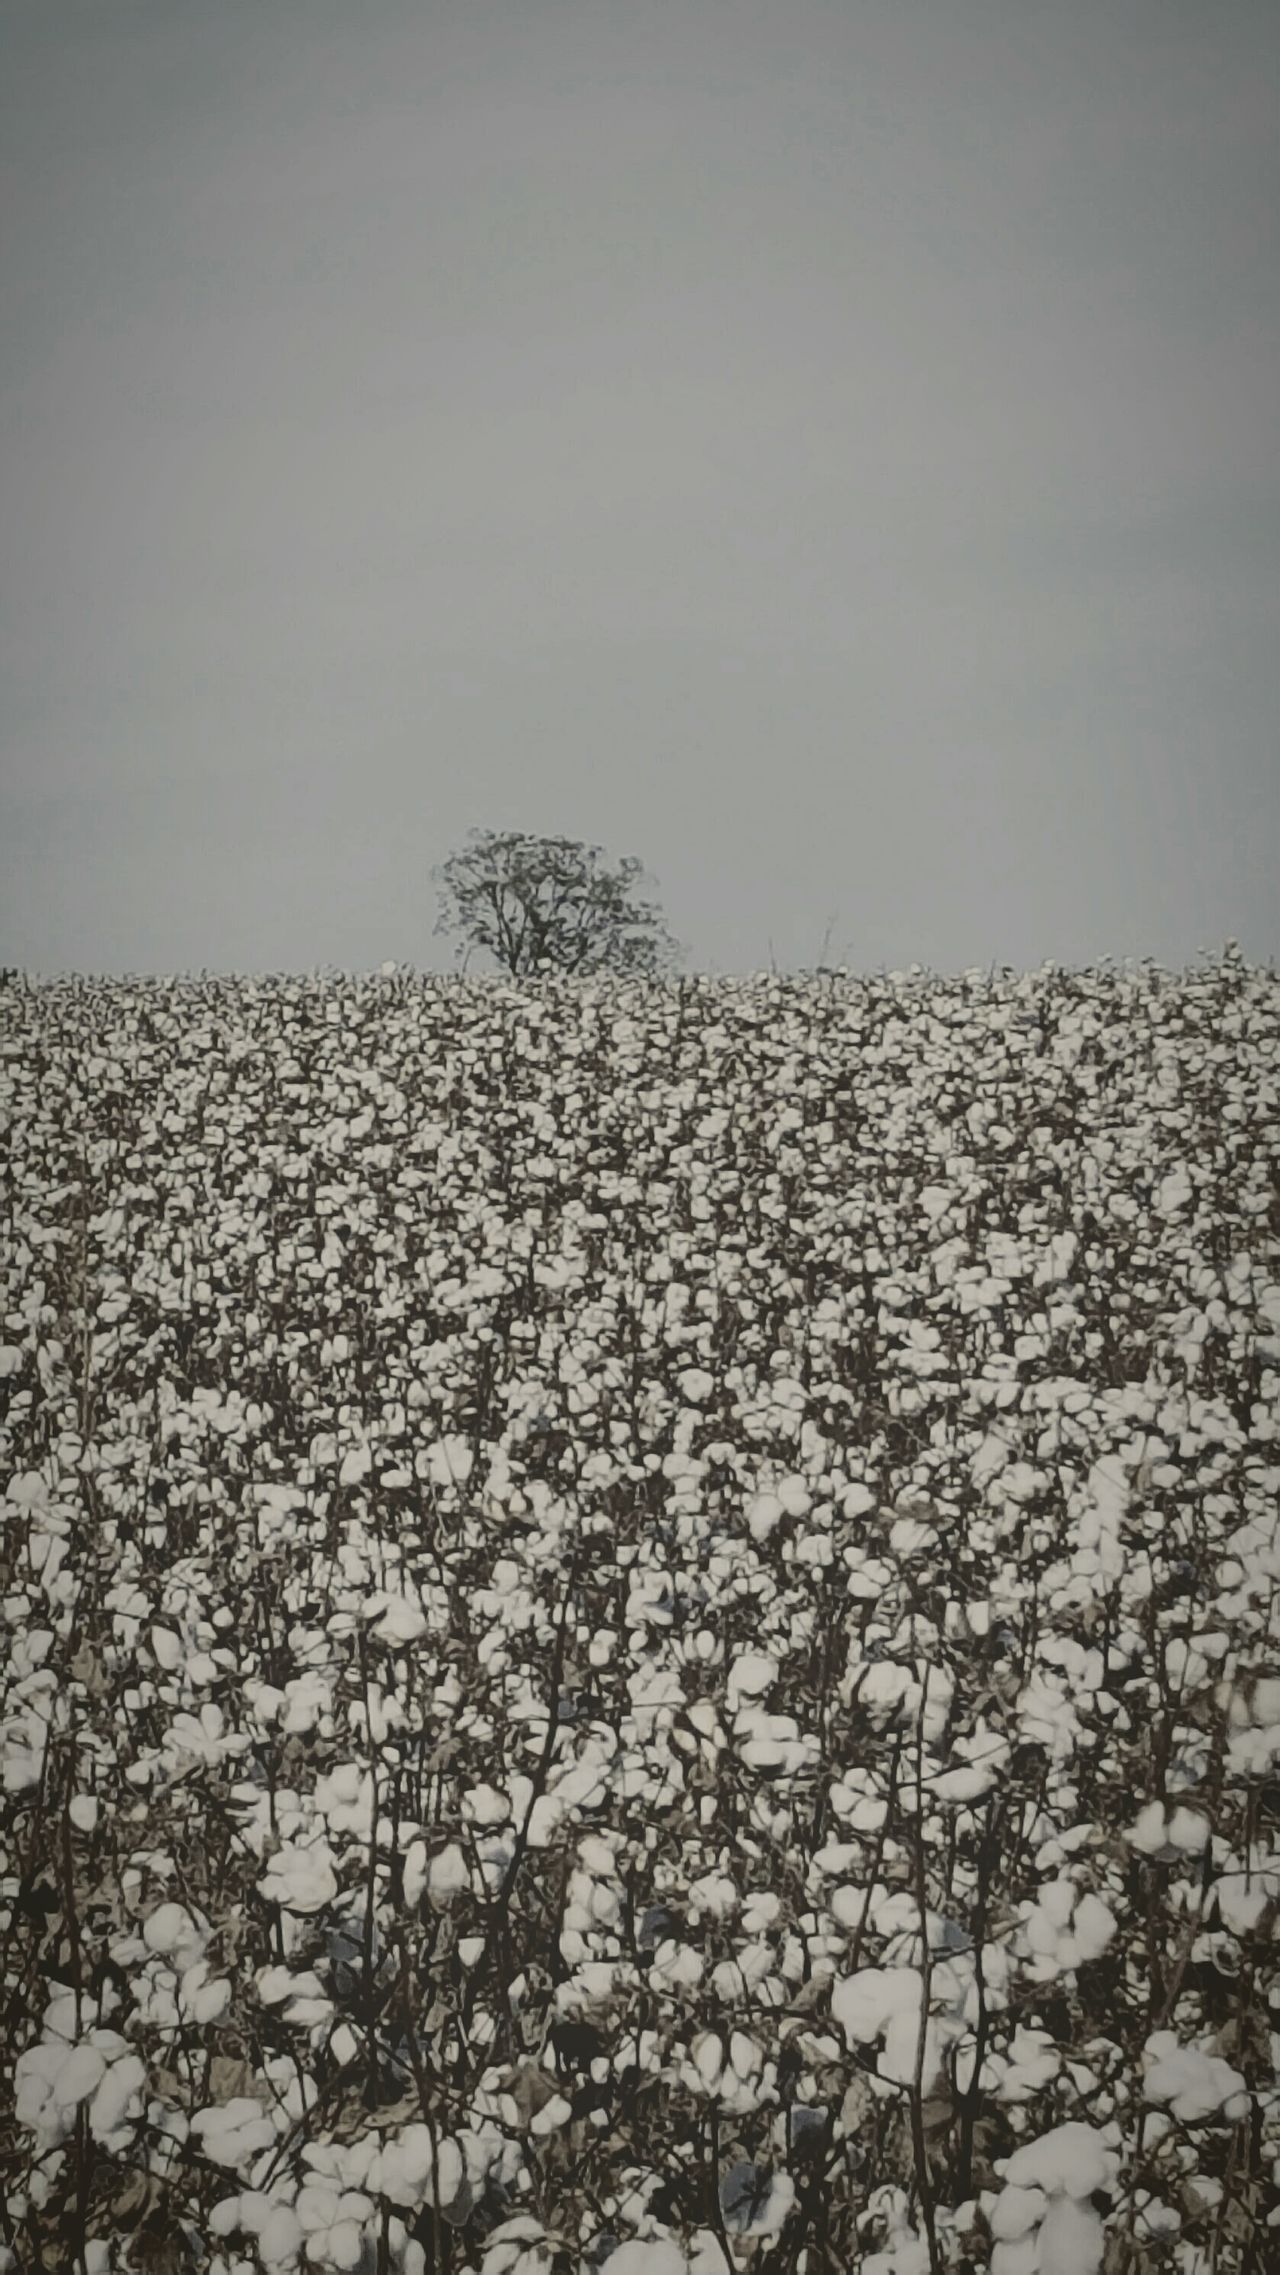 Tree in Ga cotton field